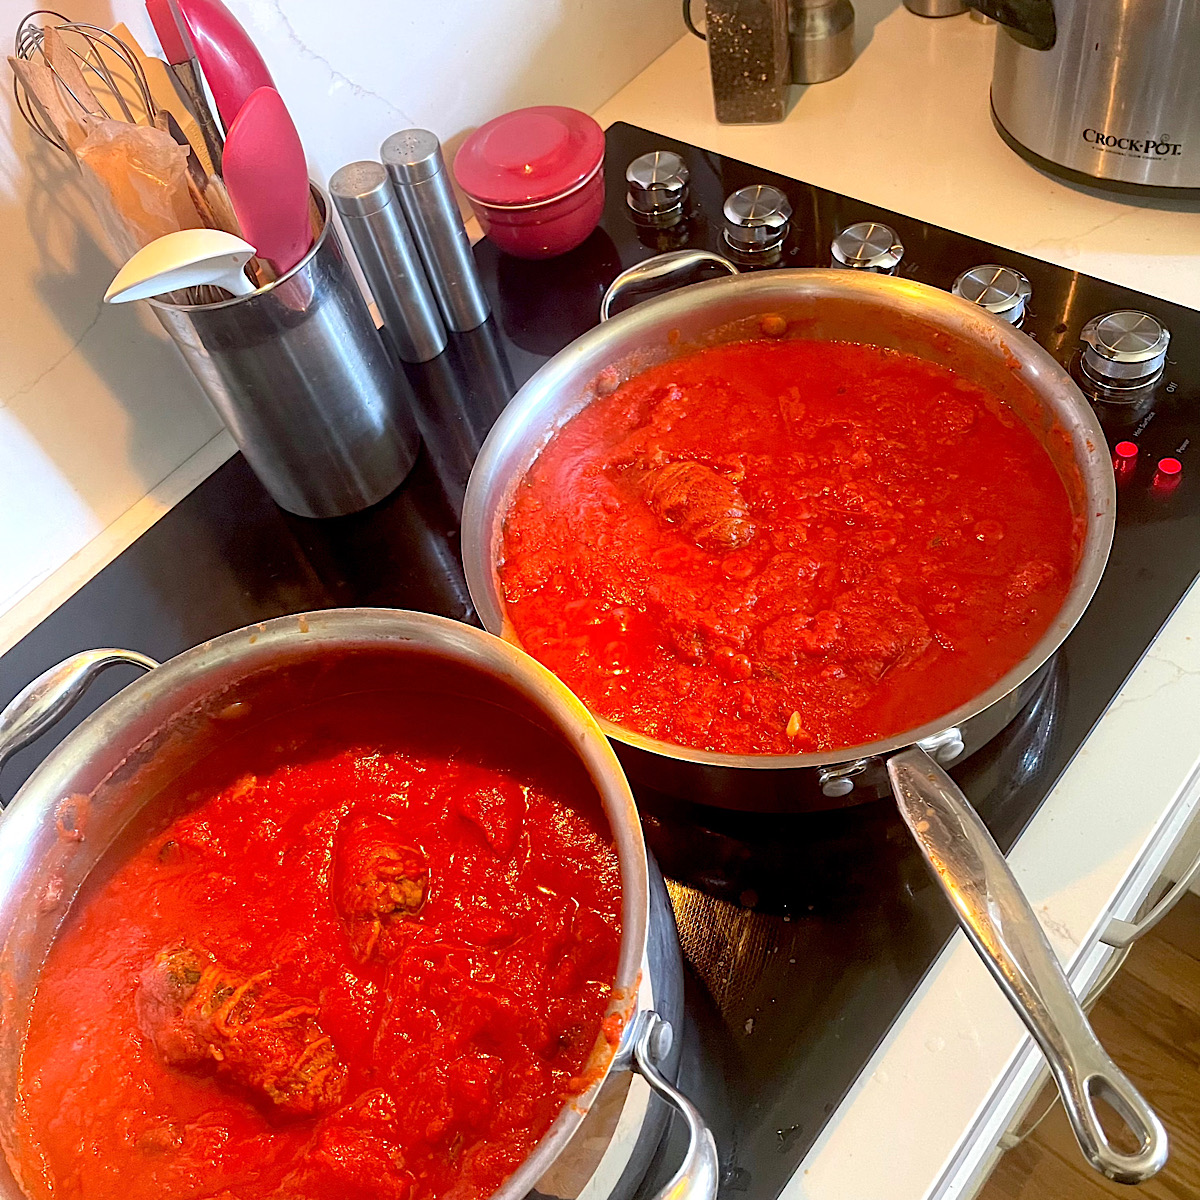 Braciole simmering in tomato sauce